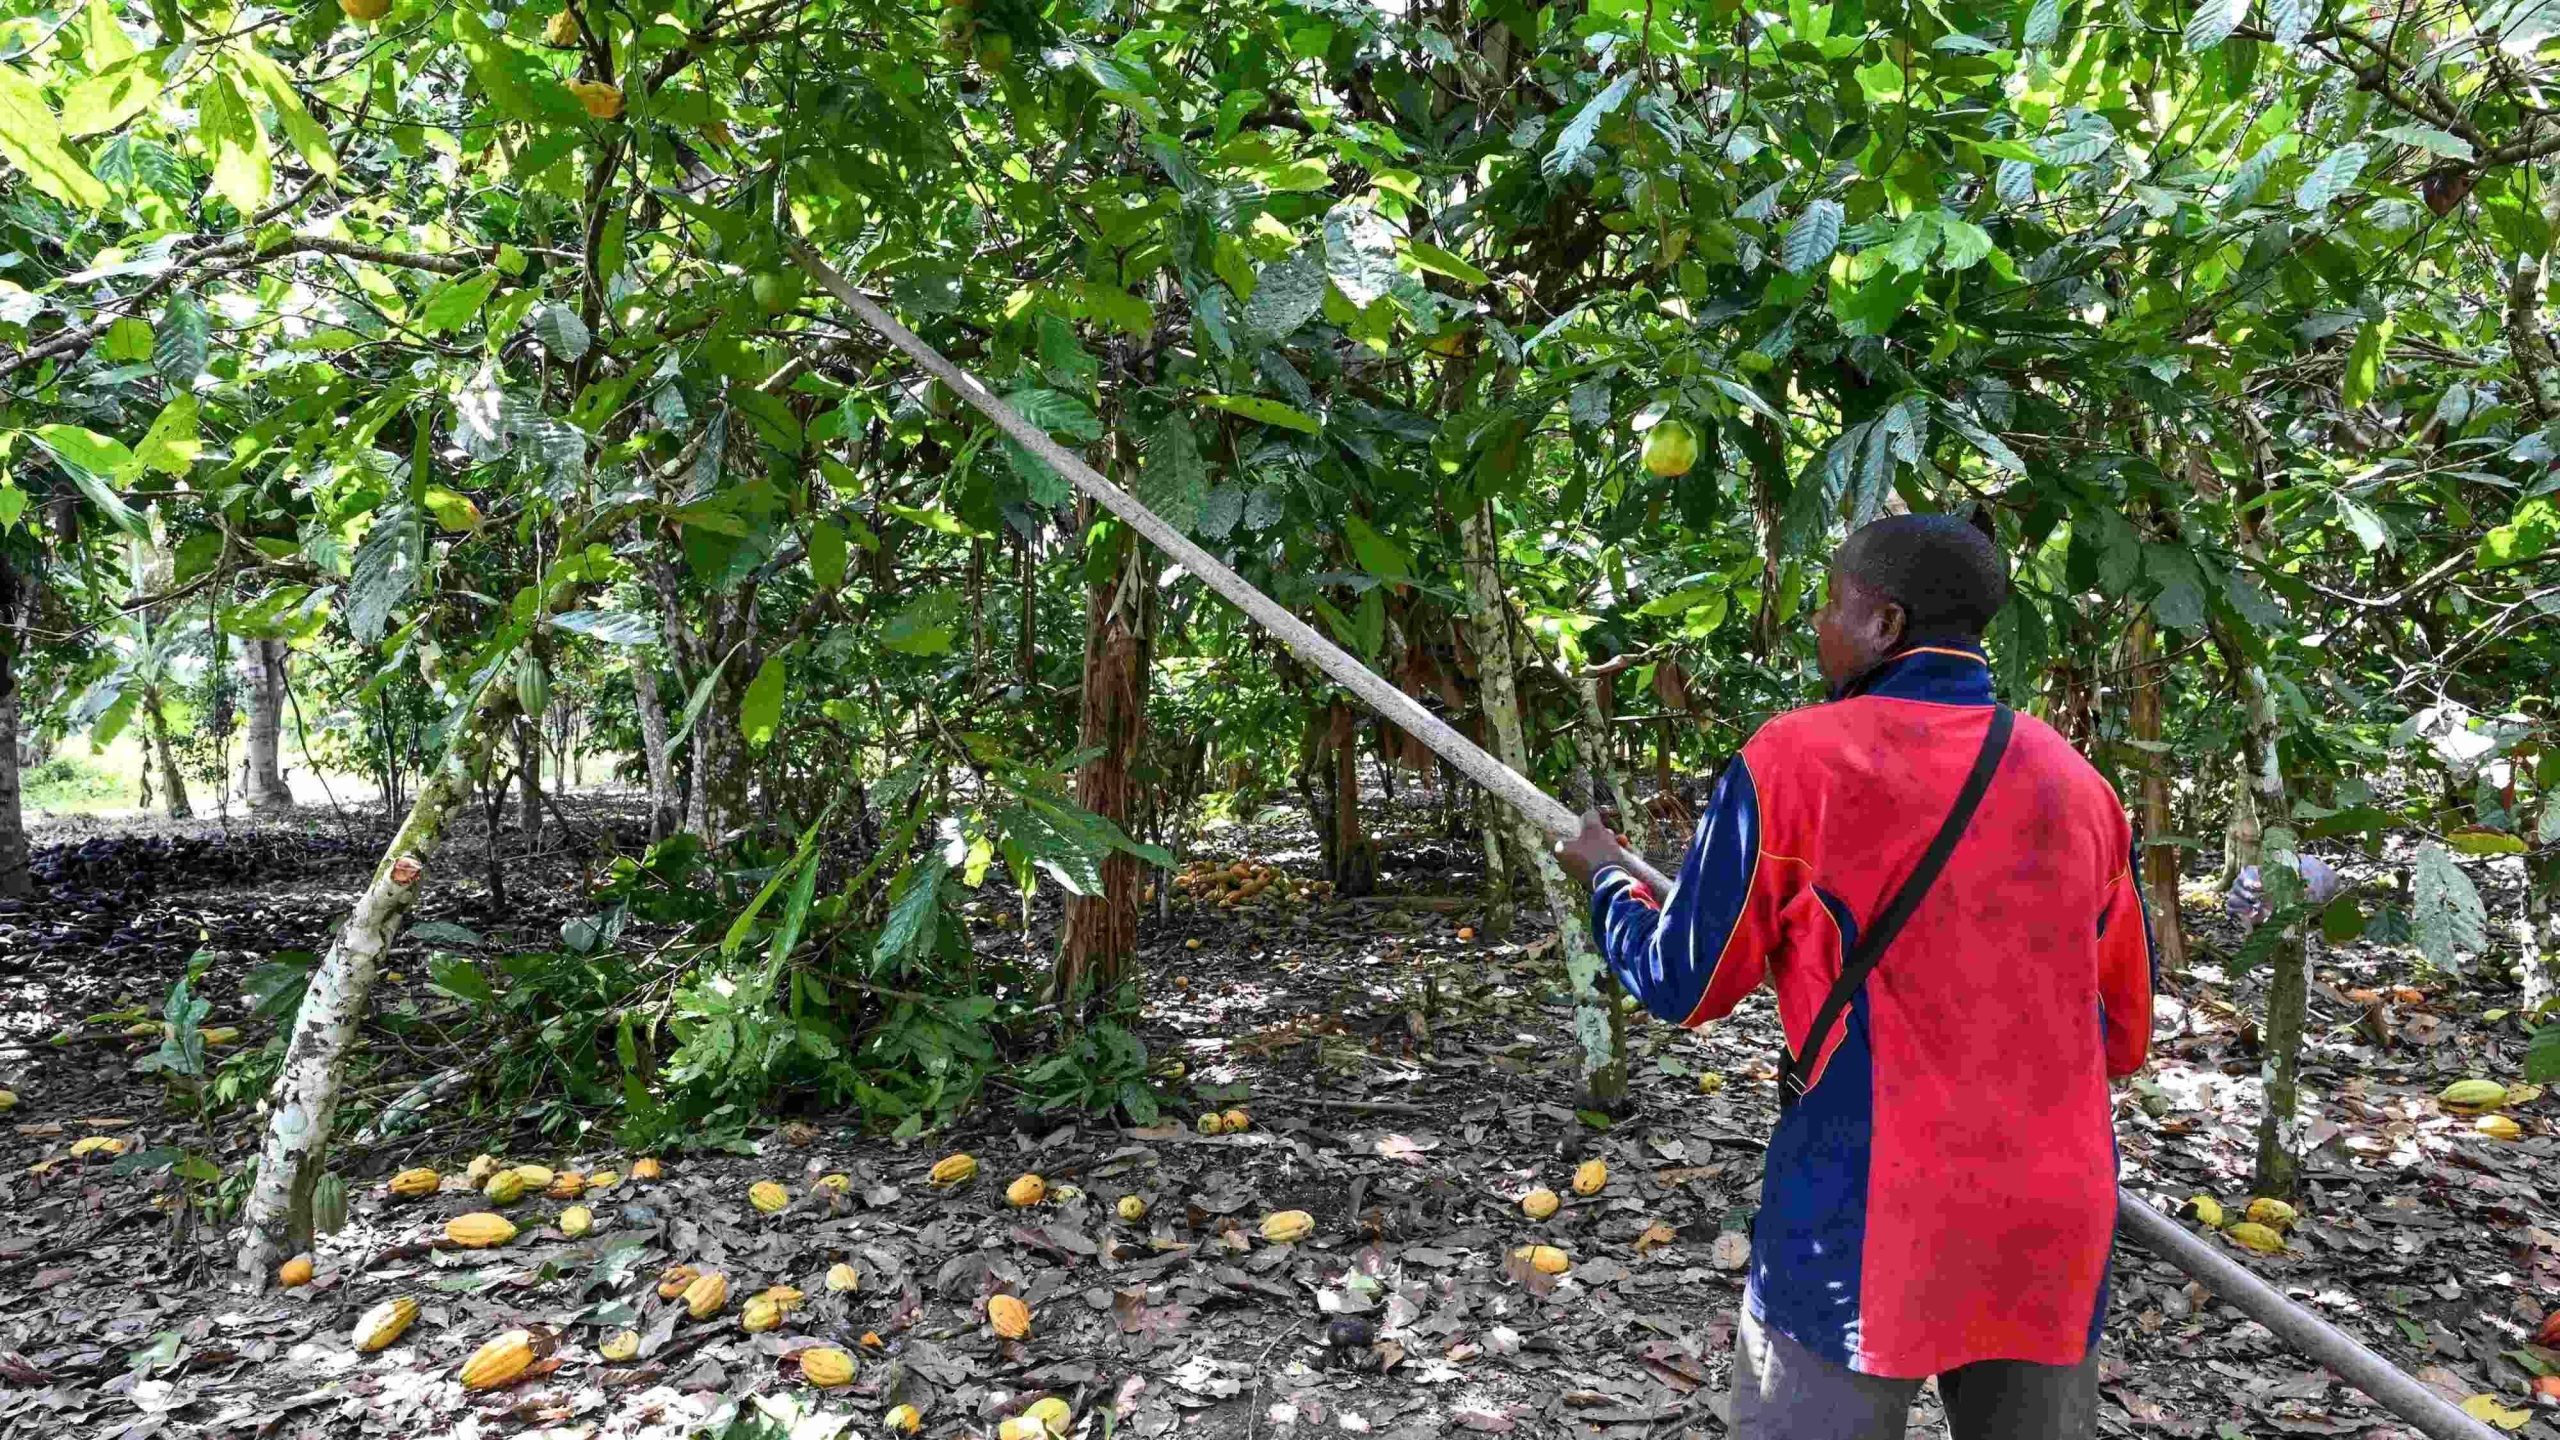 ECONOMIE Topproducent Ivoorkust vreest voor cacaoproductie na regenbuien
                    "Dertig jaar zit ik in cacao – en dit is het slechtste seizoen tot nu toe" zei Siaka Sylla terwijl hij een bijna leeg pakhuis aanschouwde bij zijn coöperatie in Ivoorkust, ’s werelds grootste producent van de boon.